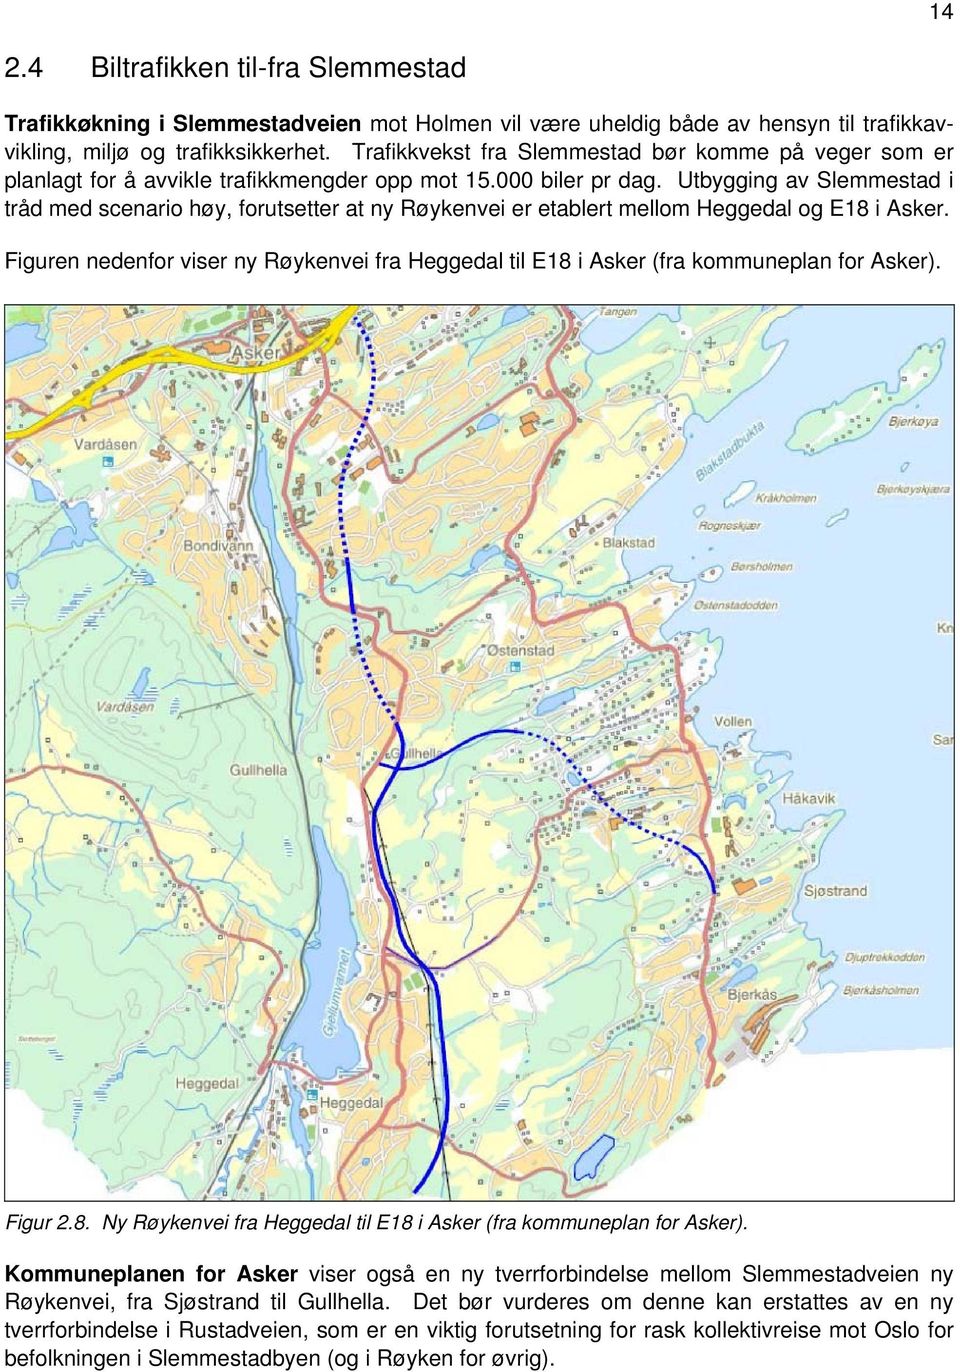 Utbygging av Slemmestad i tråd med scenario høy, forutsetter at ny Røykenvei er etablert mellom Heggedal og E18 i Asker.